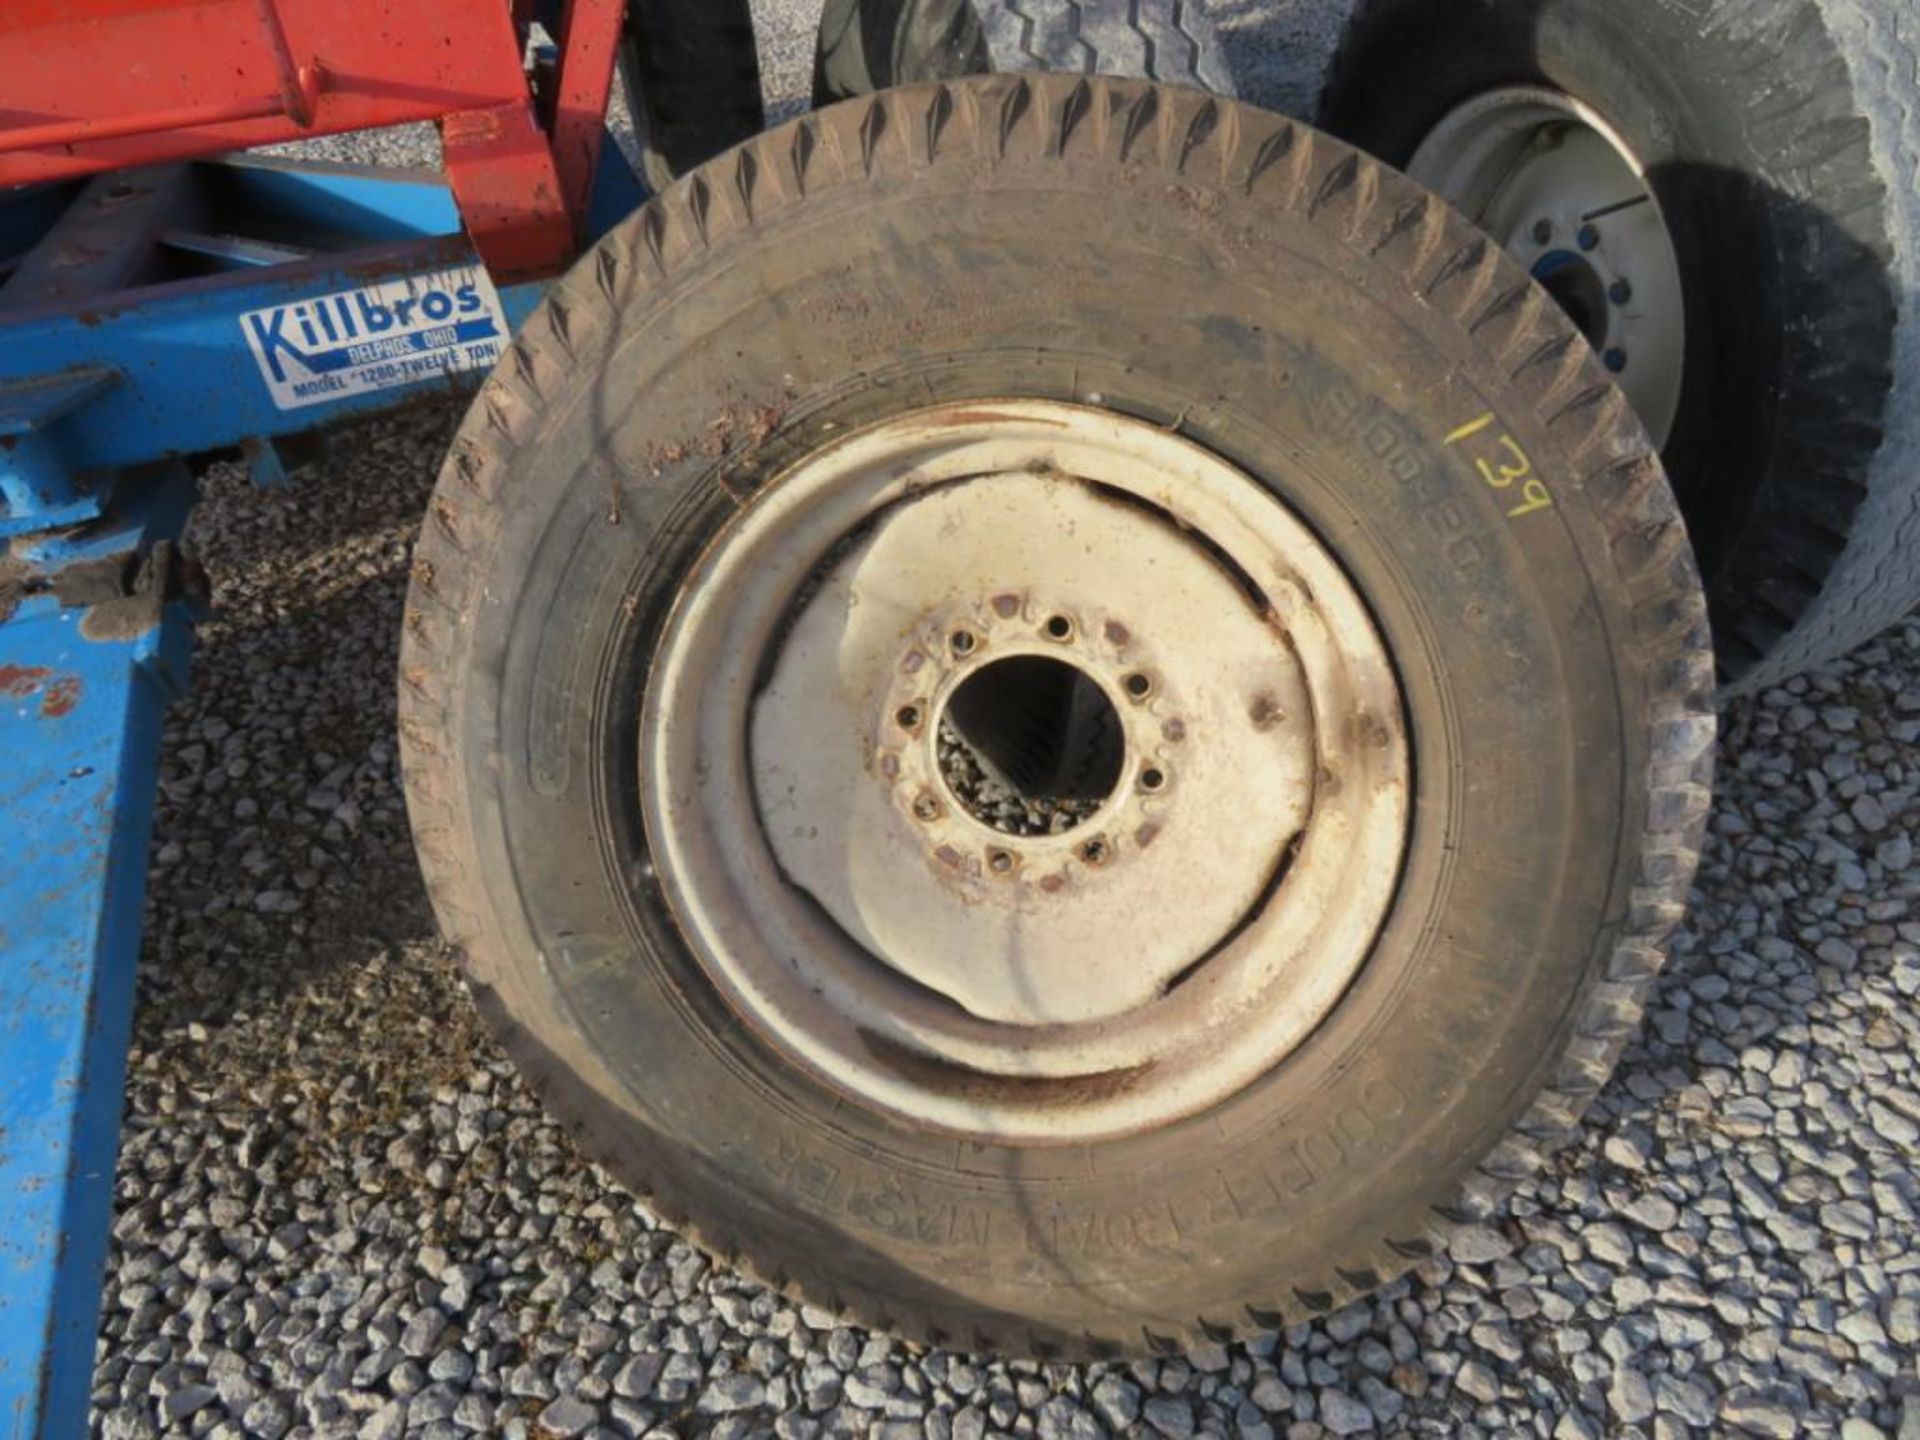 spare tire for kill bros wagon